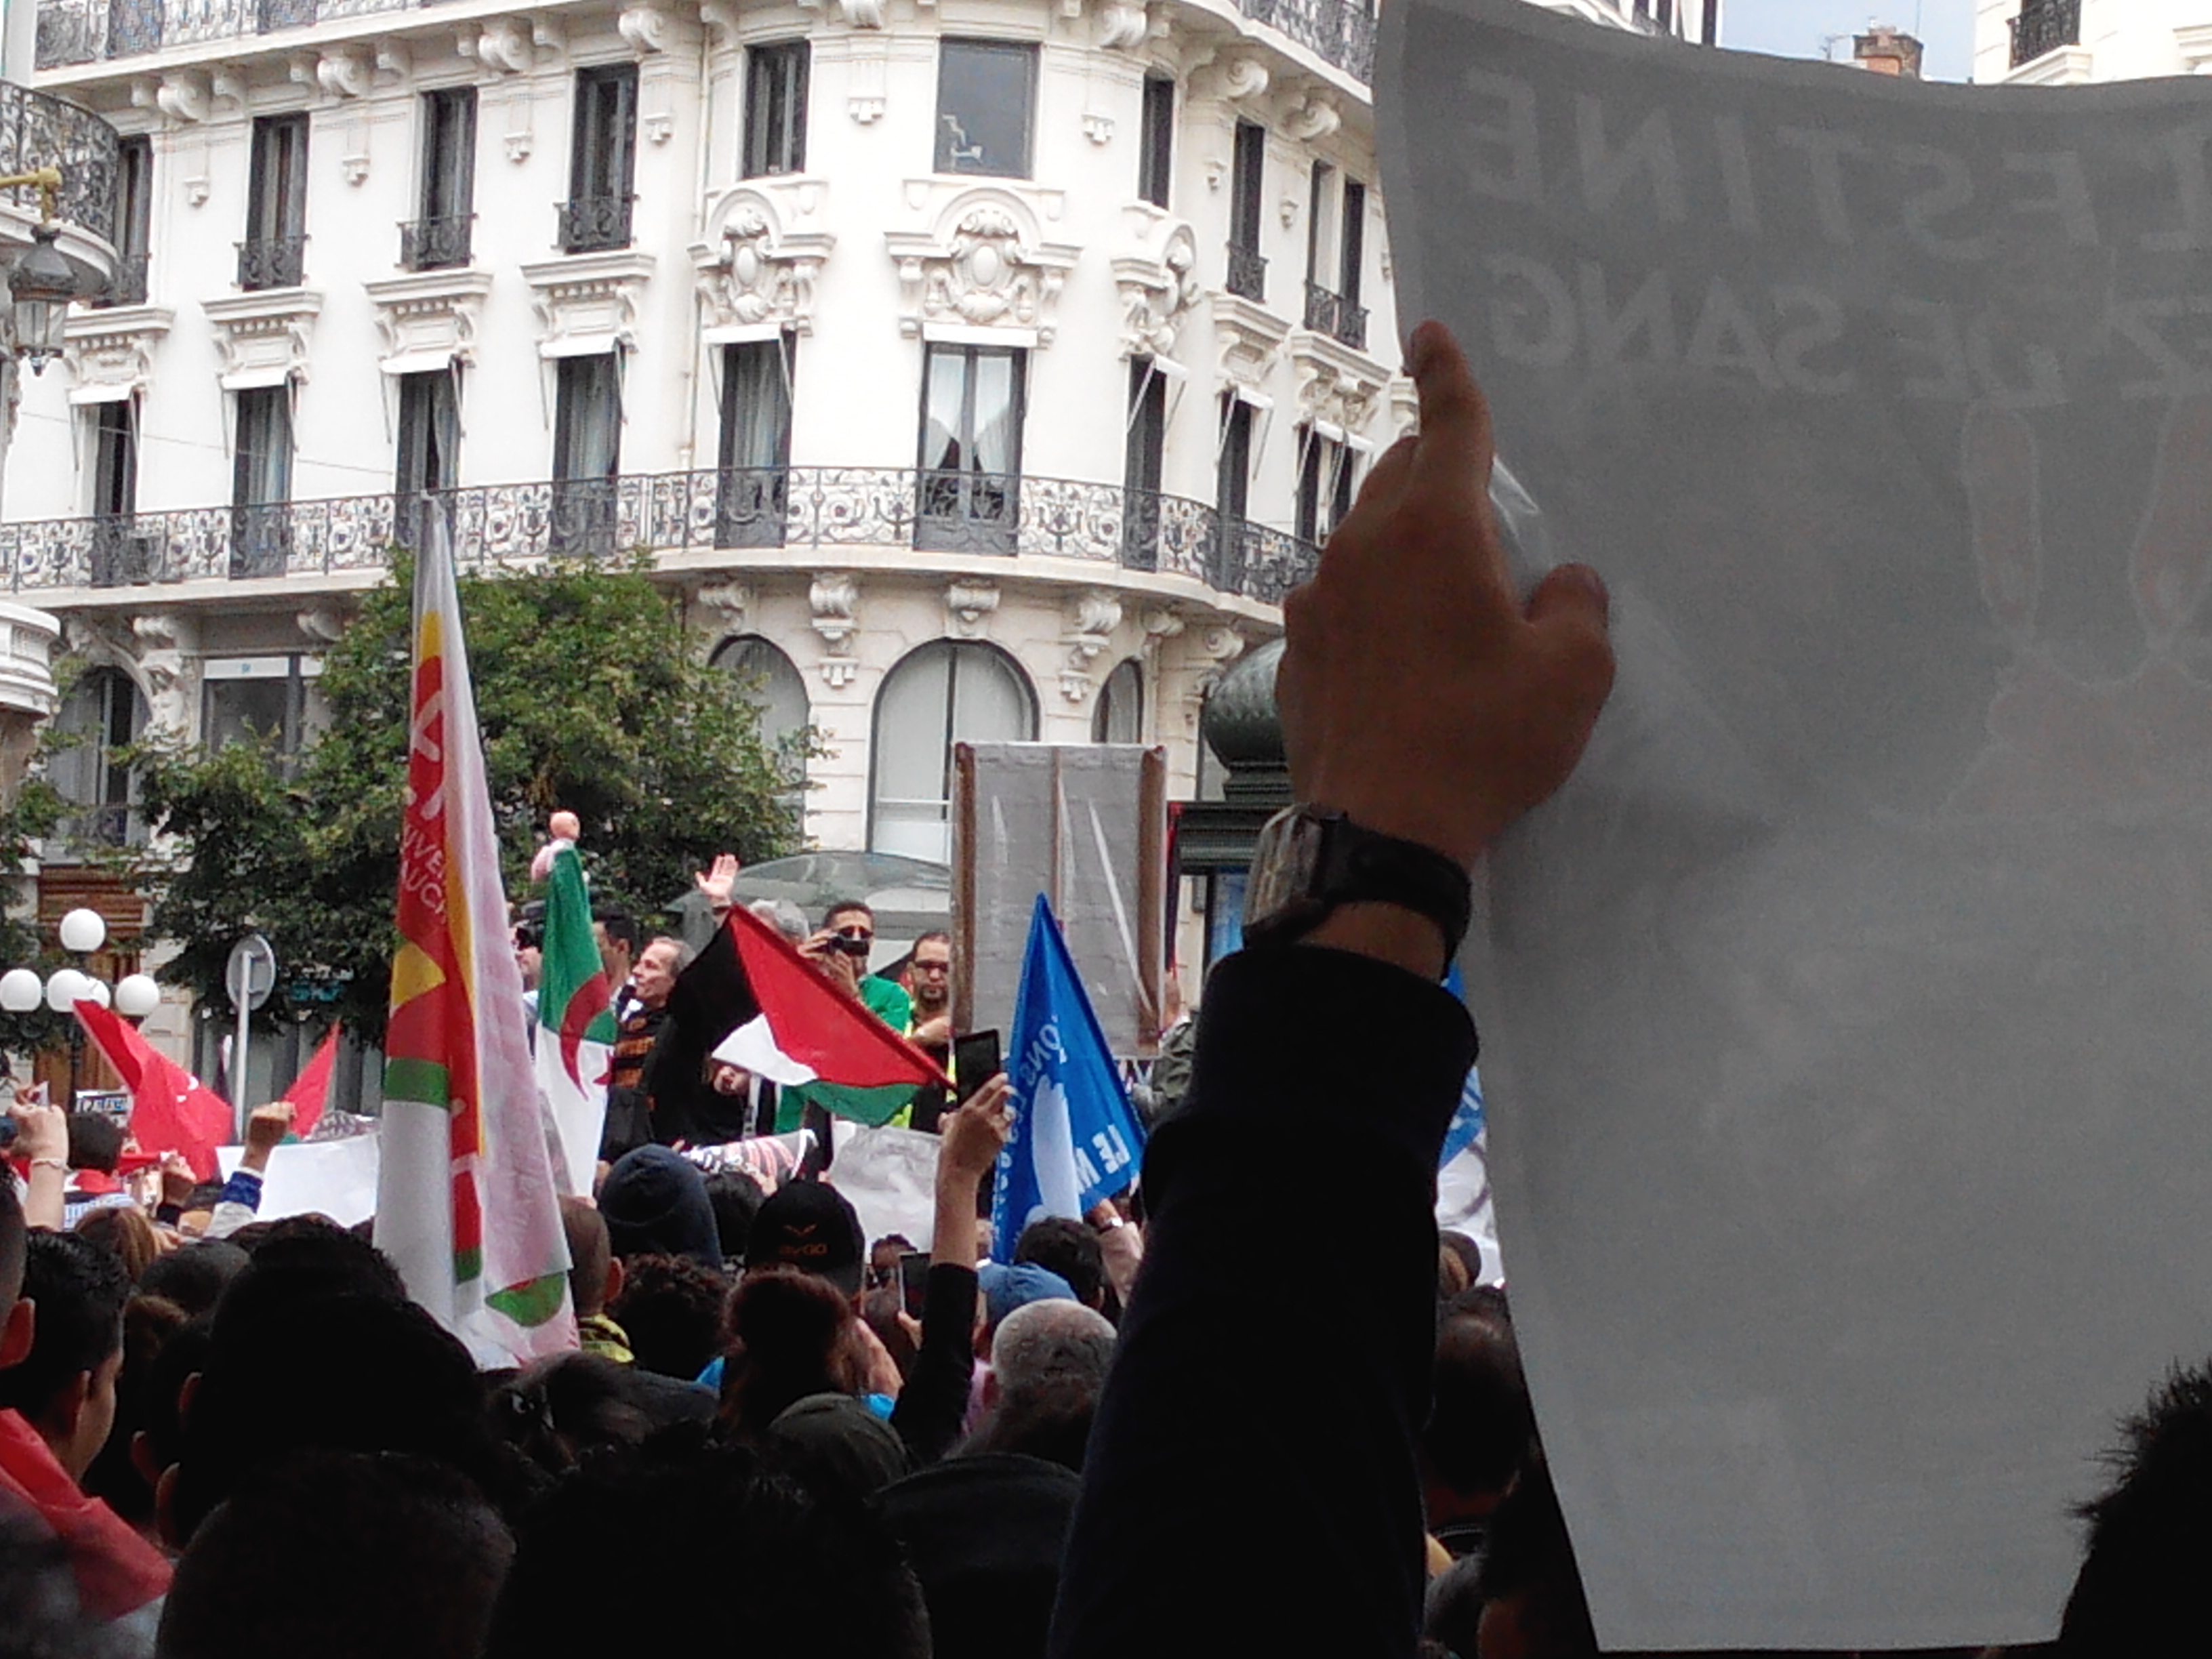 Place de la République, les slogans fusent. On distingue un drapeau algérien